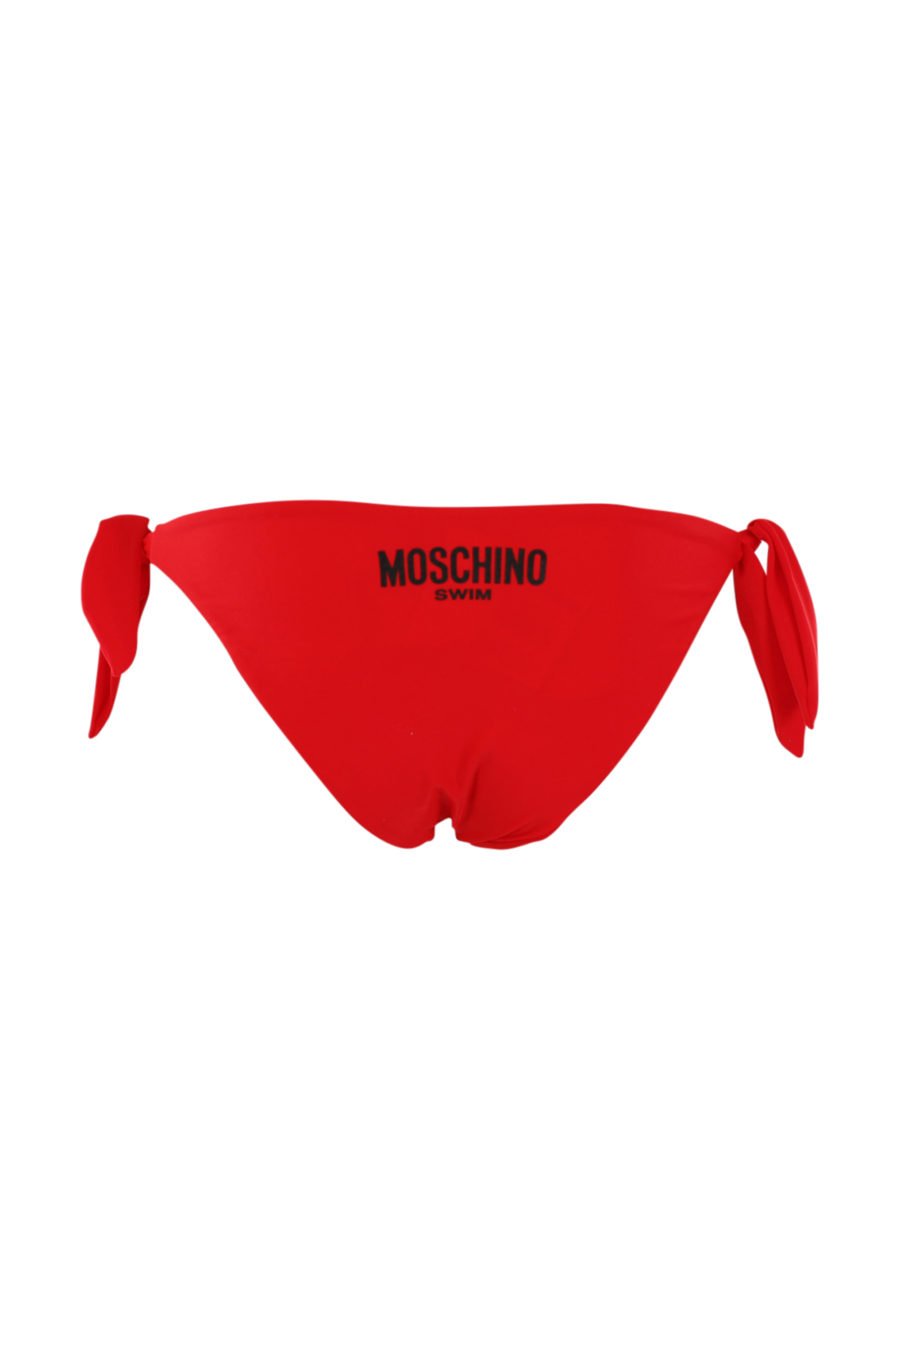 Bañador rojo con logo negro - IMG 0930